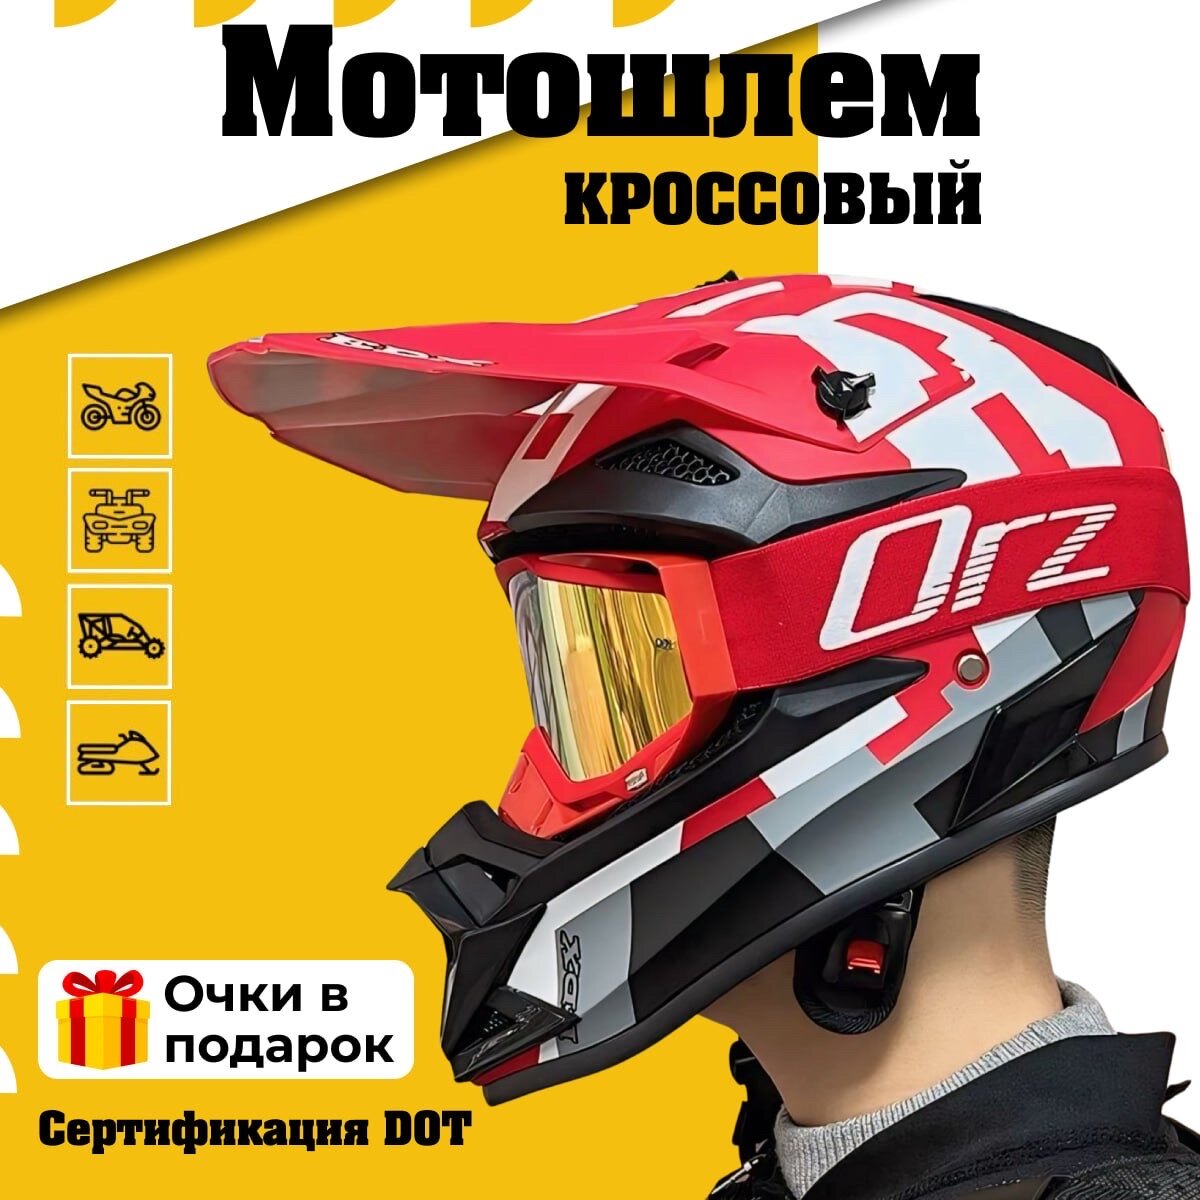 Шлем с очками кроссовый для мотоцикла квадроцикла, мотошлем питбайк EDX, красный M